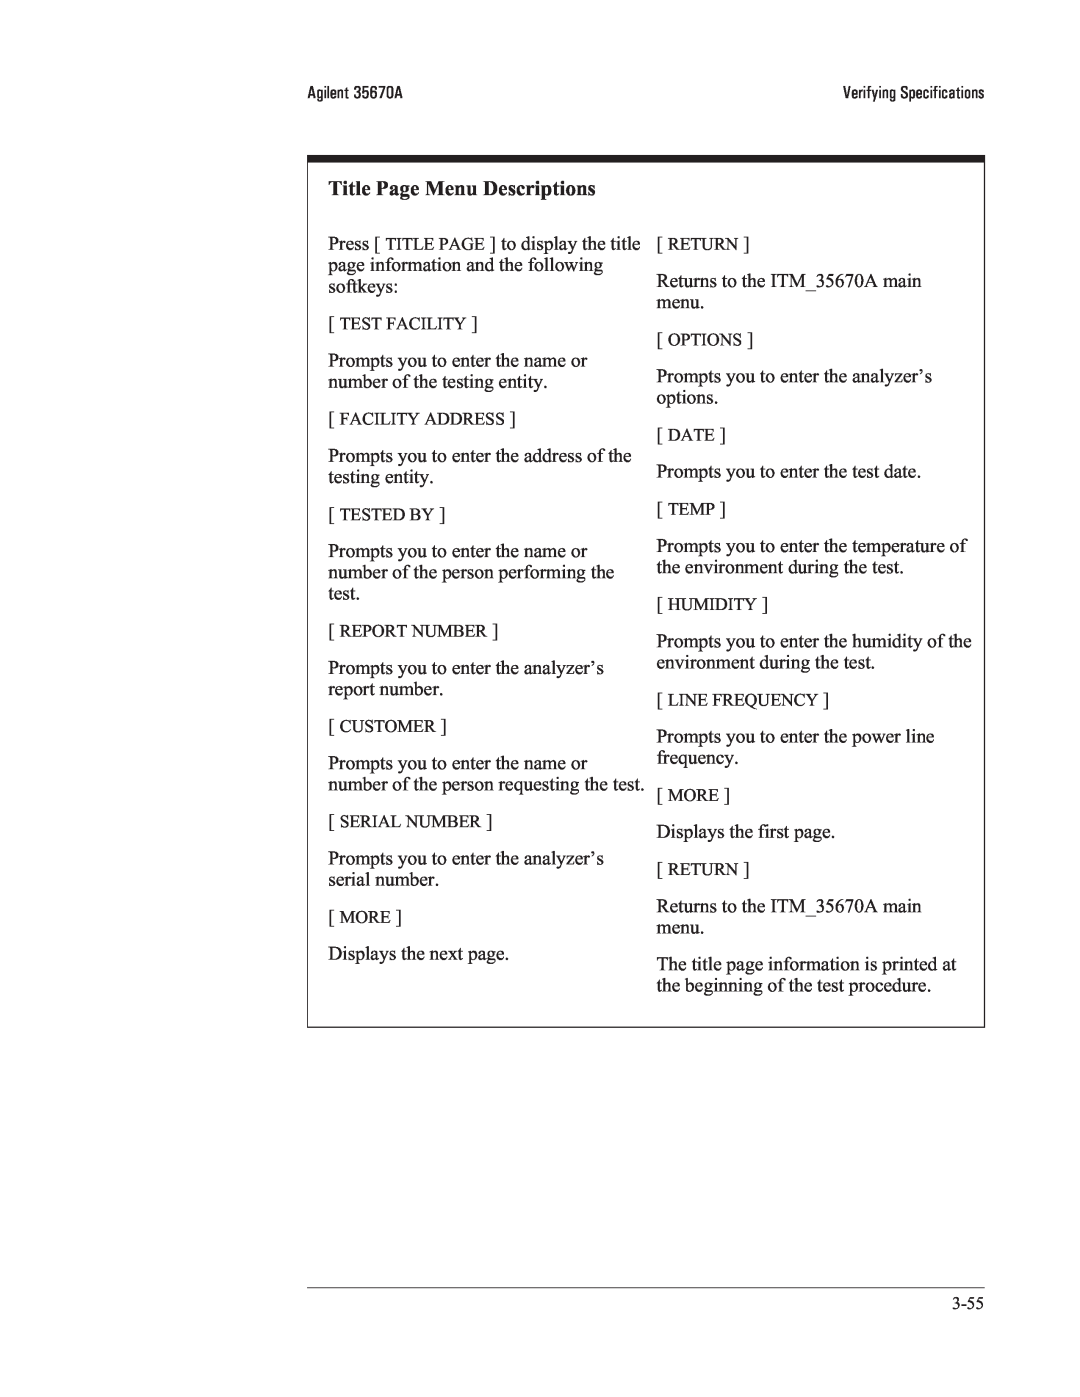 Agilent Technologies 35670-90066 manual Title Page Menu Descriptions 